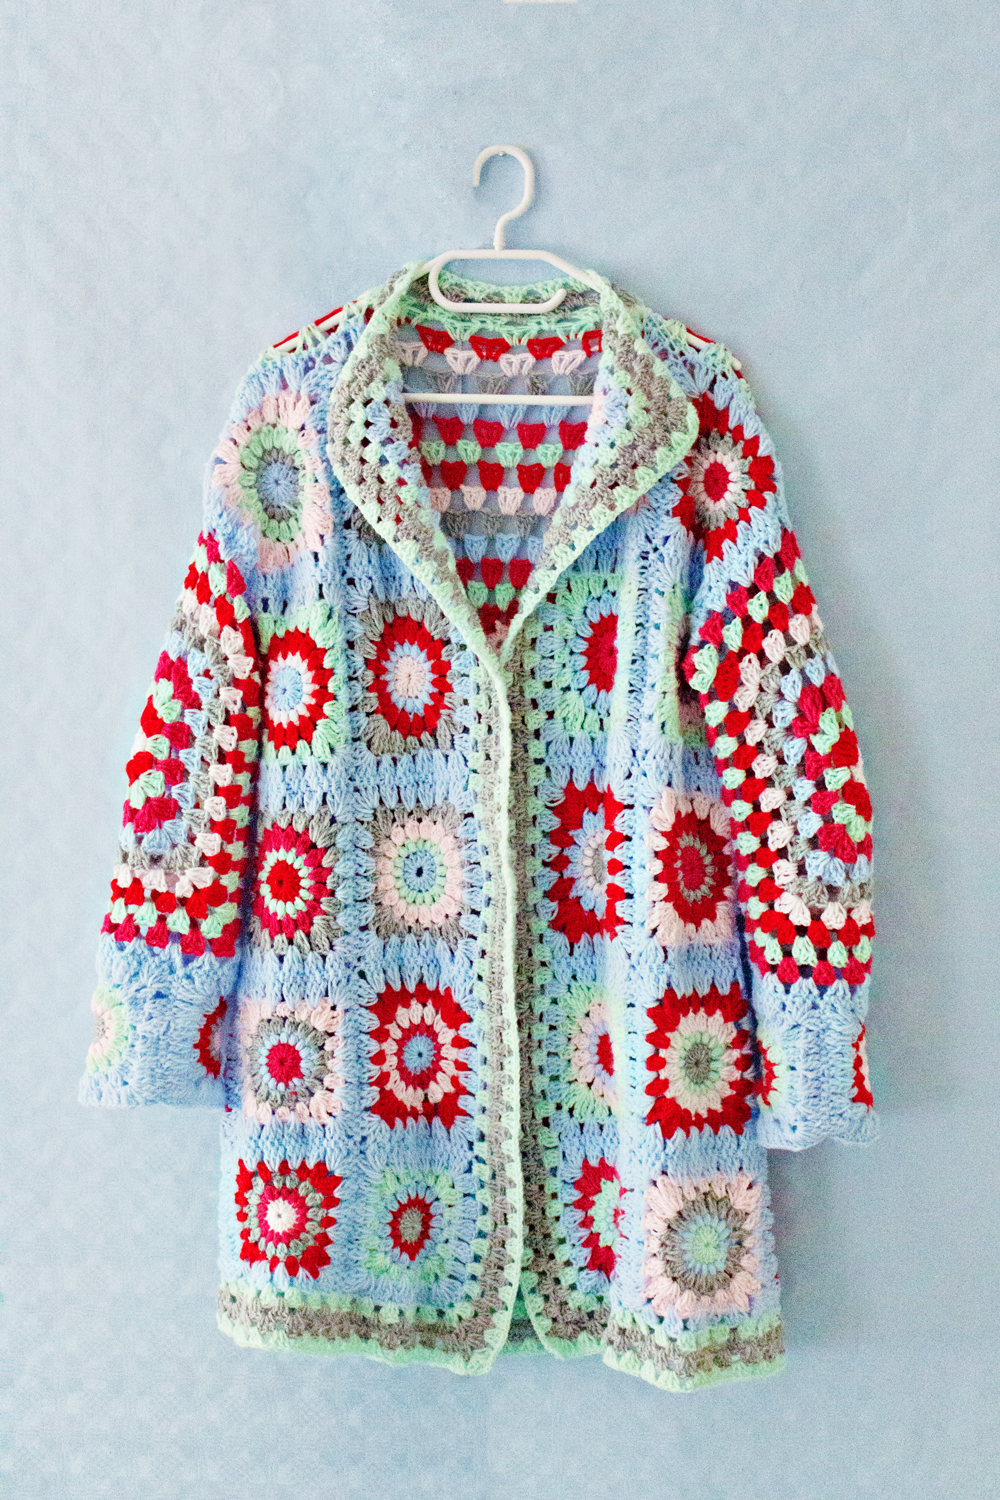 CROCHET DIY | Granny Square Sweater